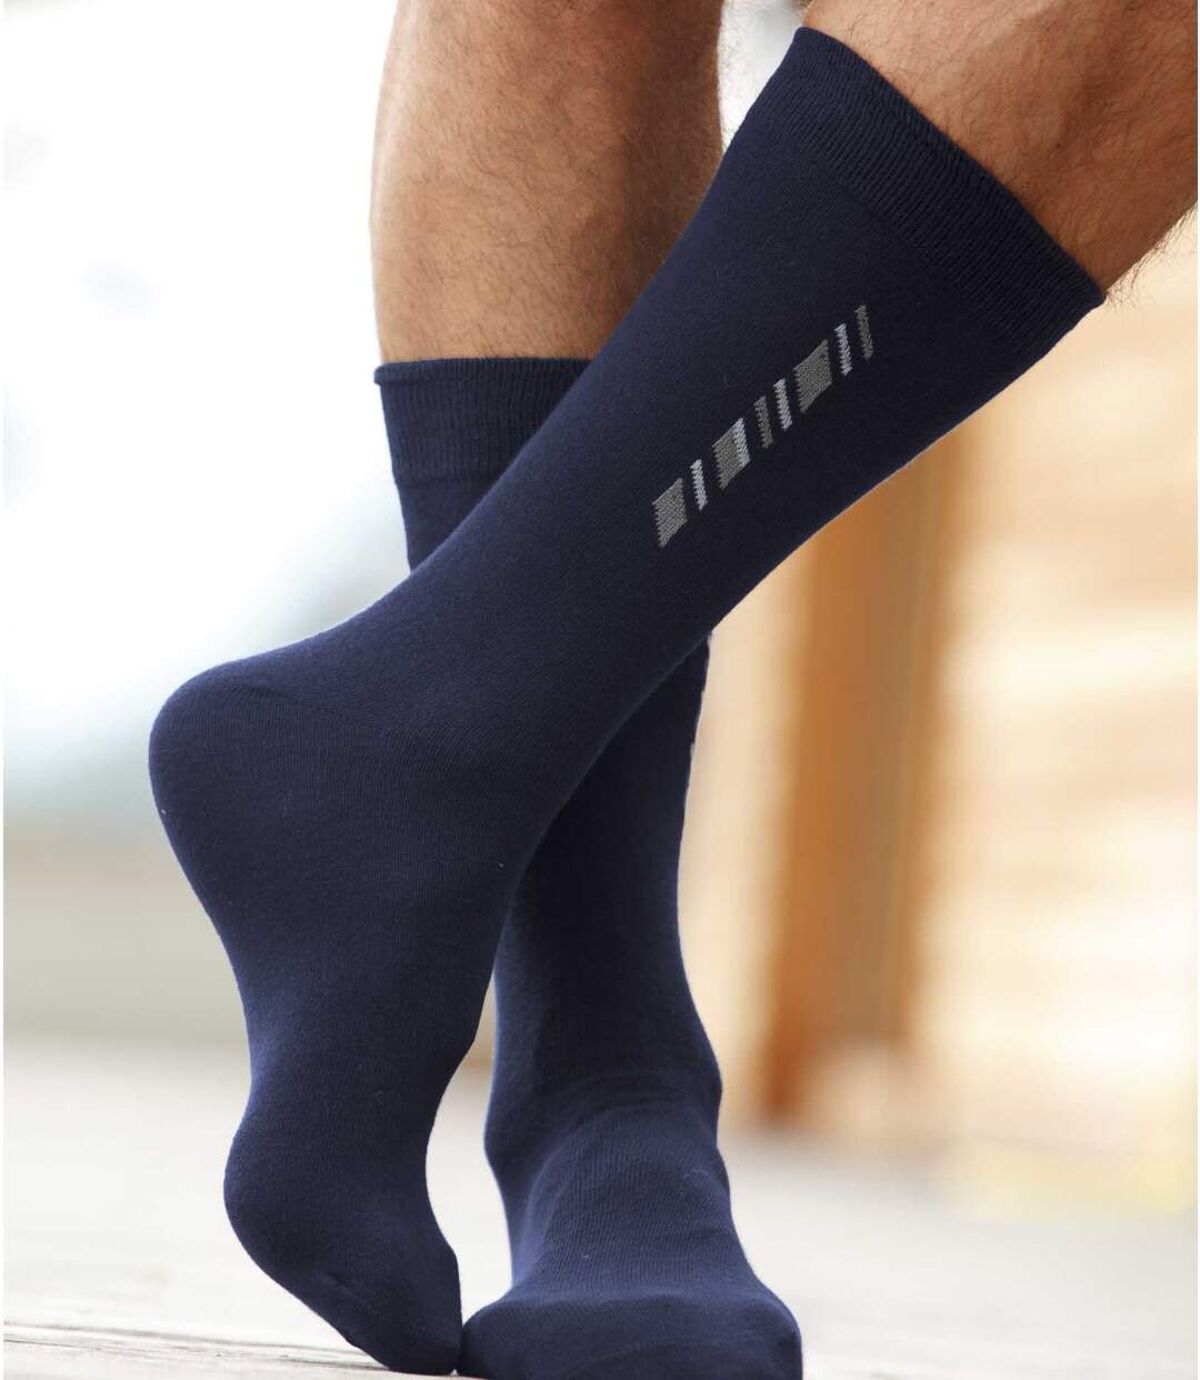 5 Pairs of Men's Patterned Socks - Black Navy Gray Atlas For Men